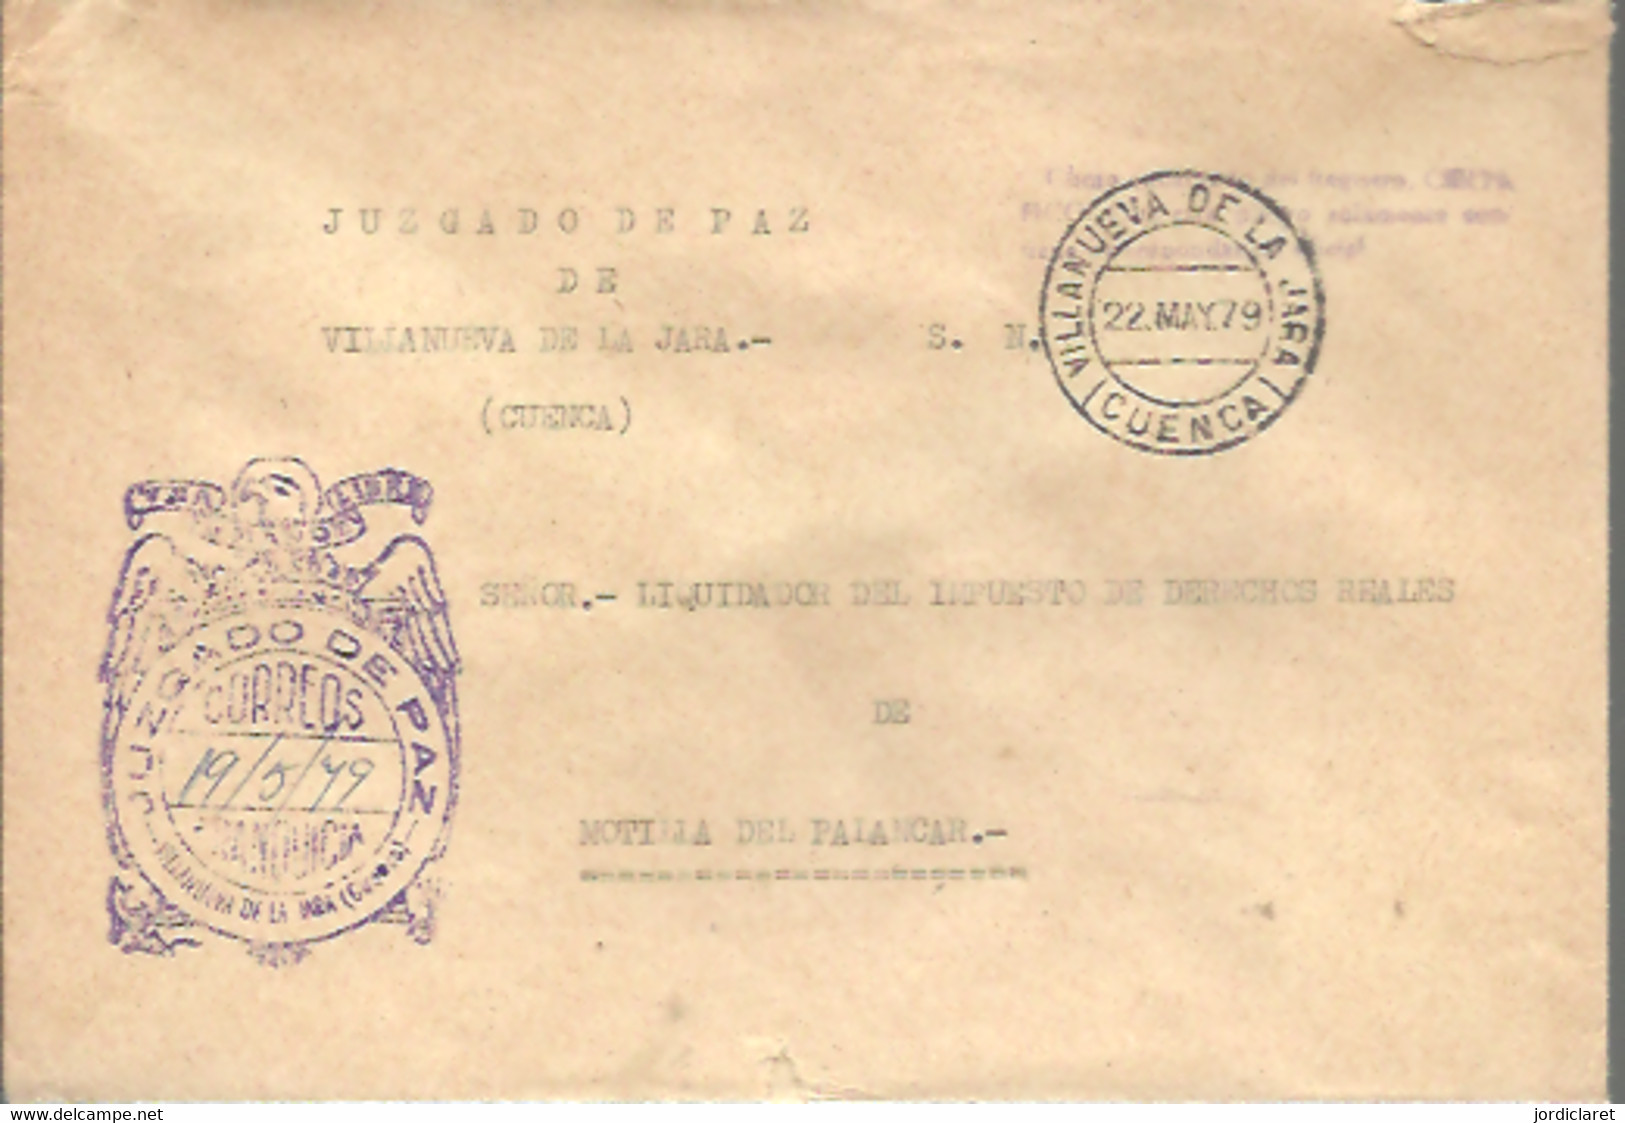 MARCA  JUZGADO DE PAZ  VILLANUEVA DE LA JARA CUENCA 1979 - Franchigia Postale